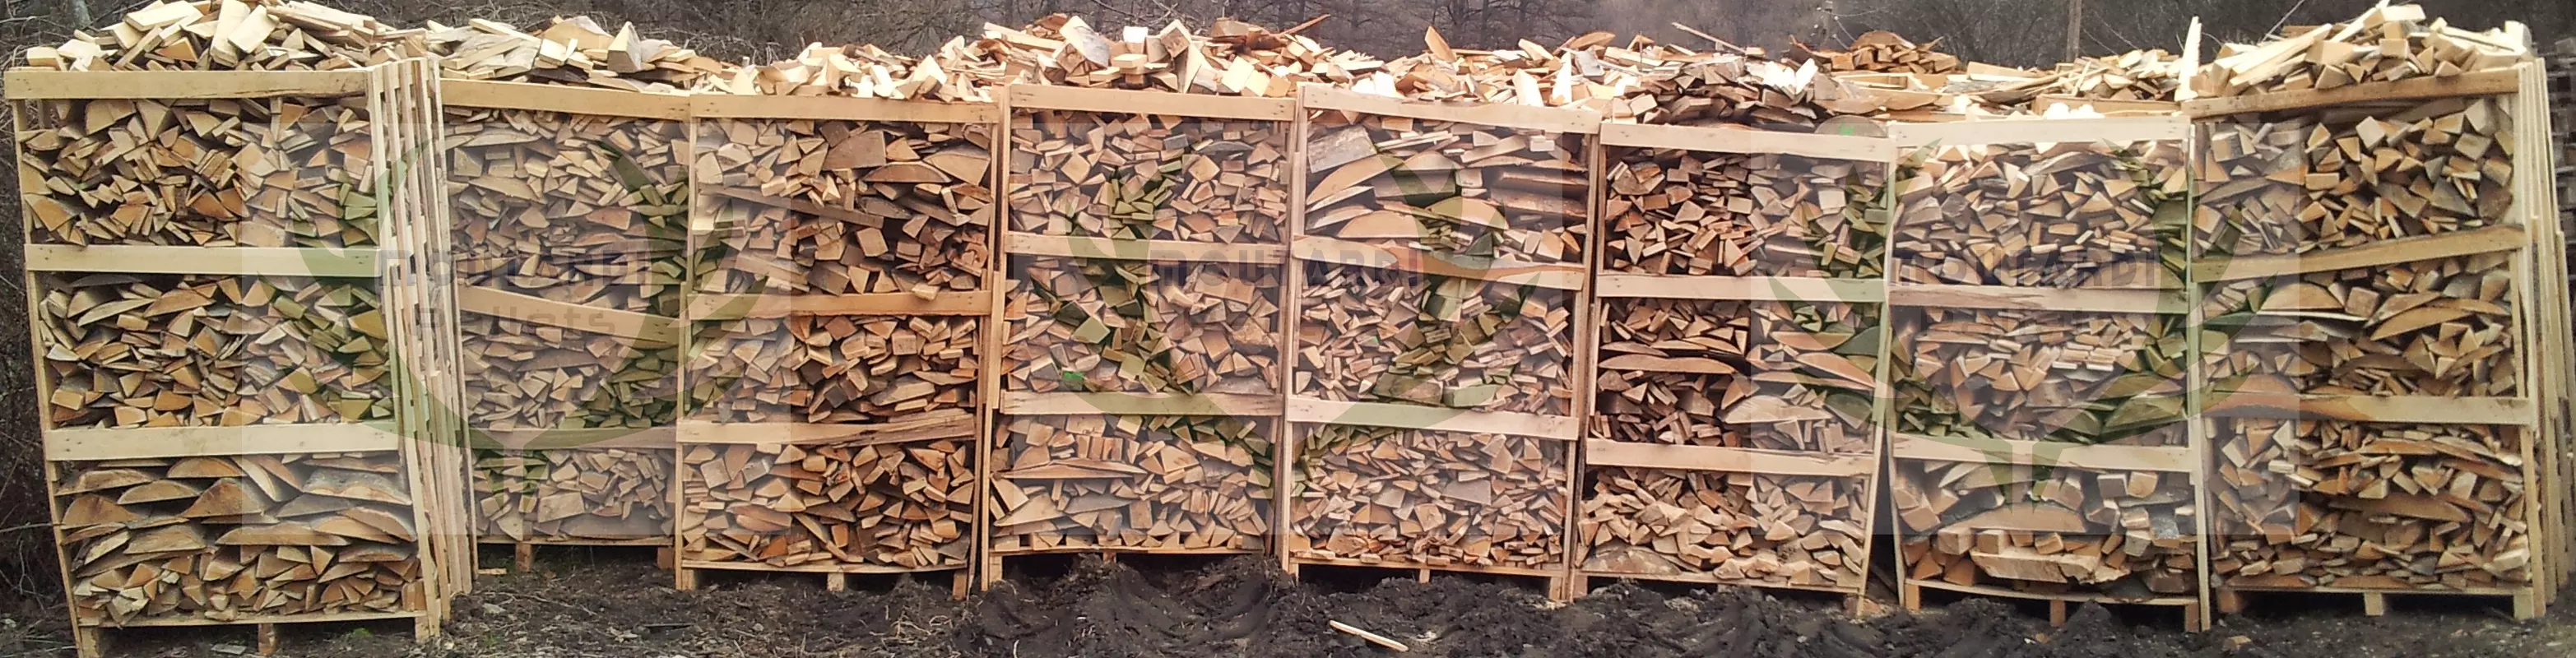 Beech wood scraps 4